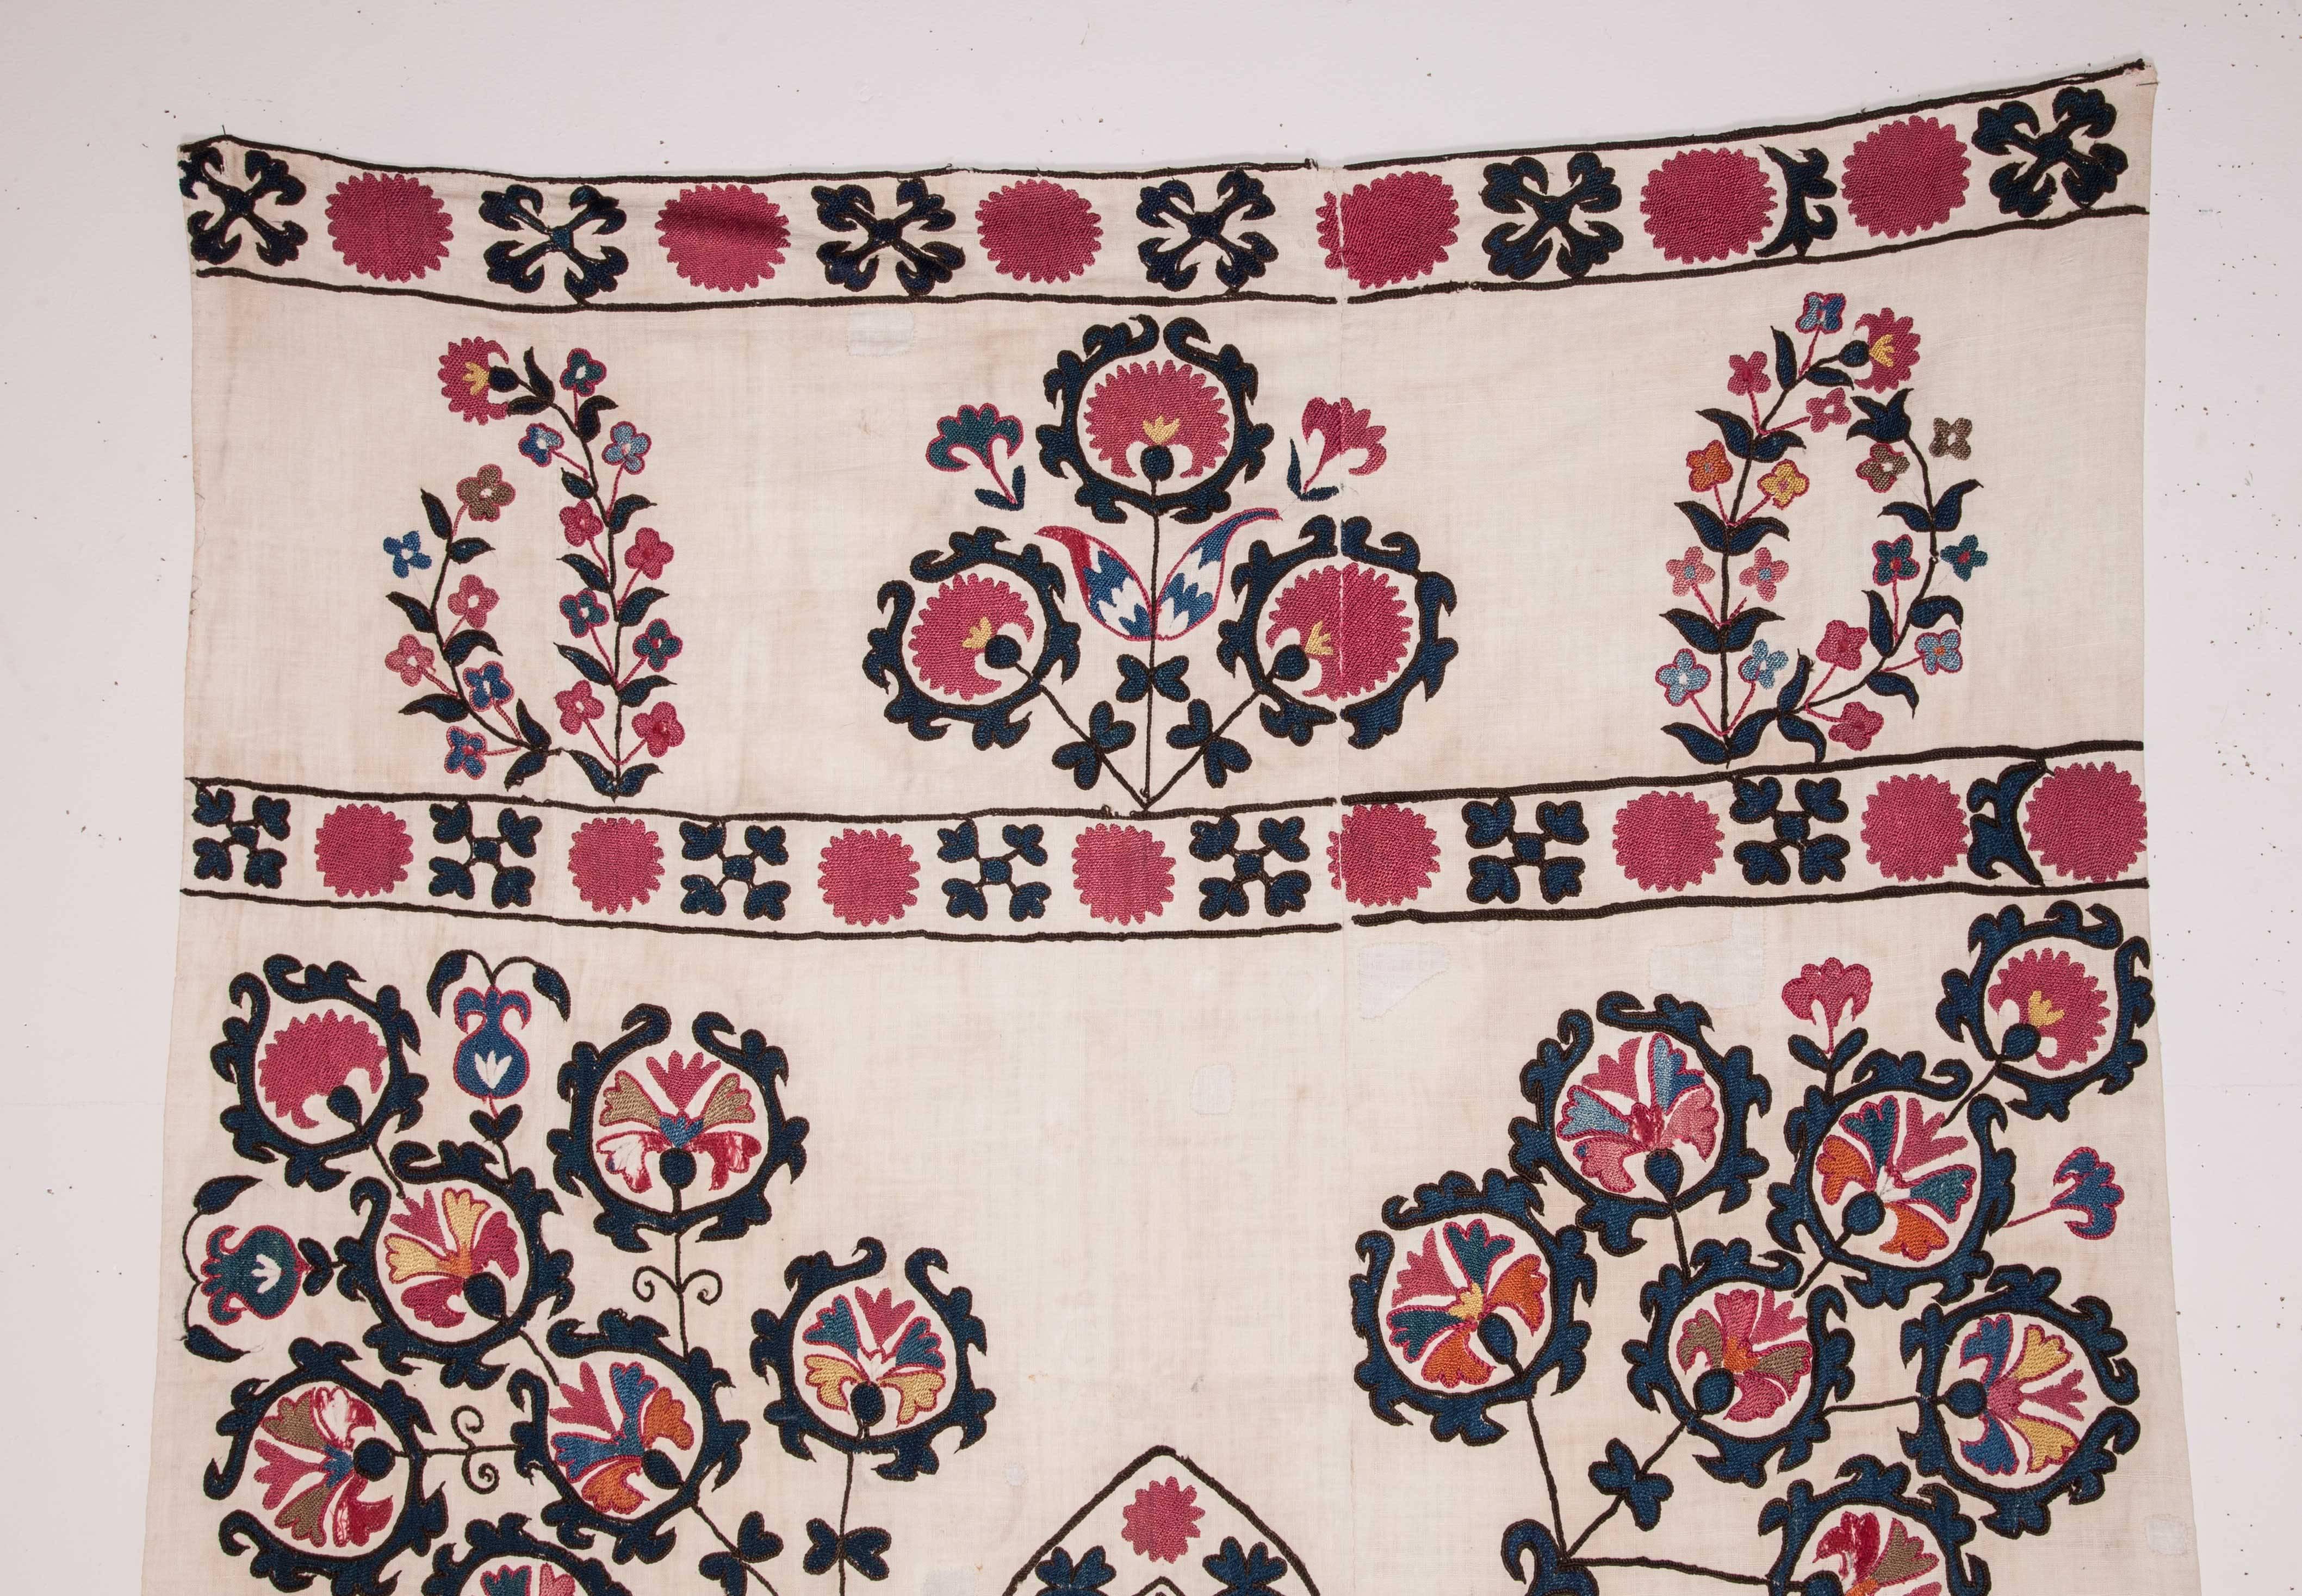 Embroidered 19th Century Uzbek Suzani Fragment from Tashkent